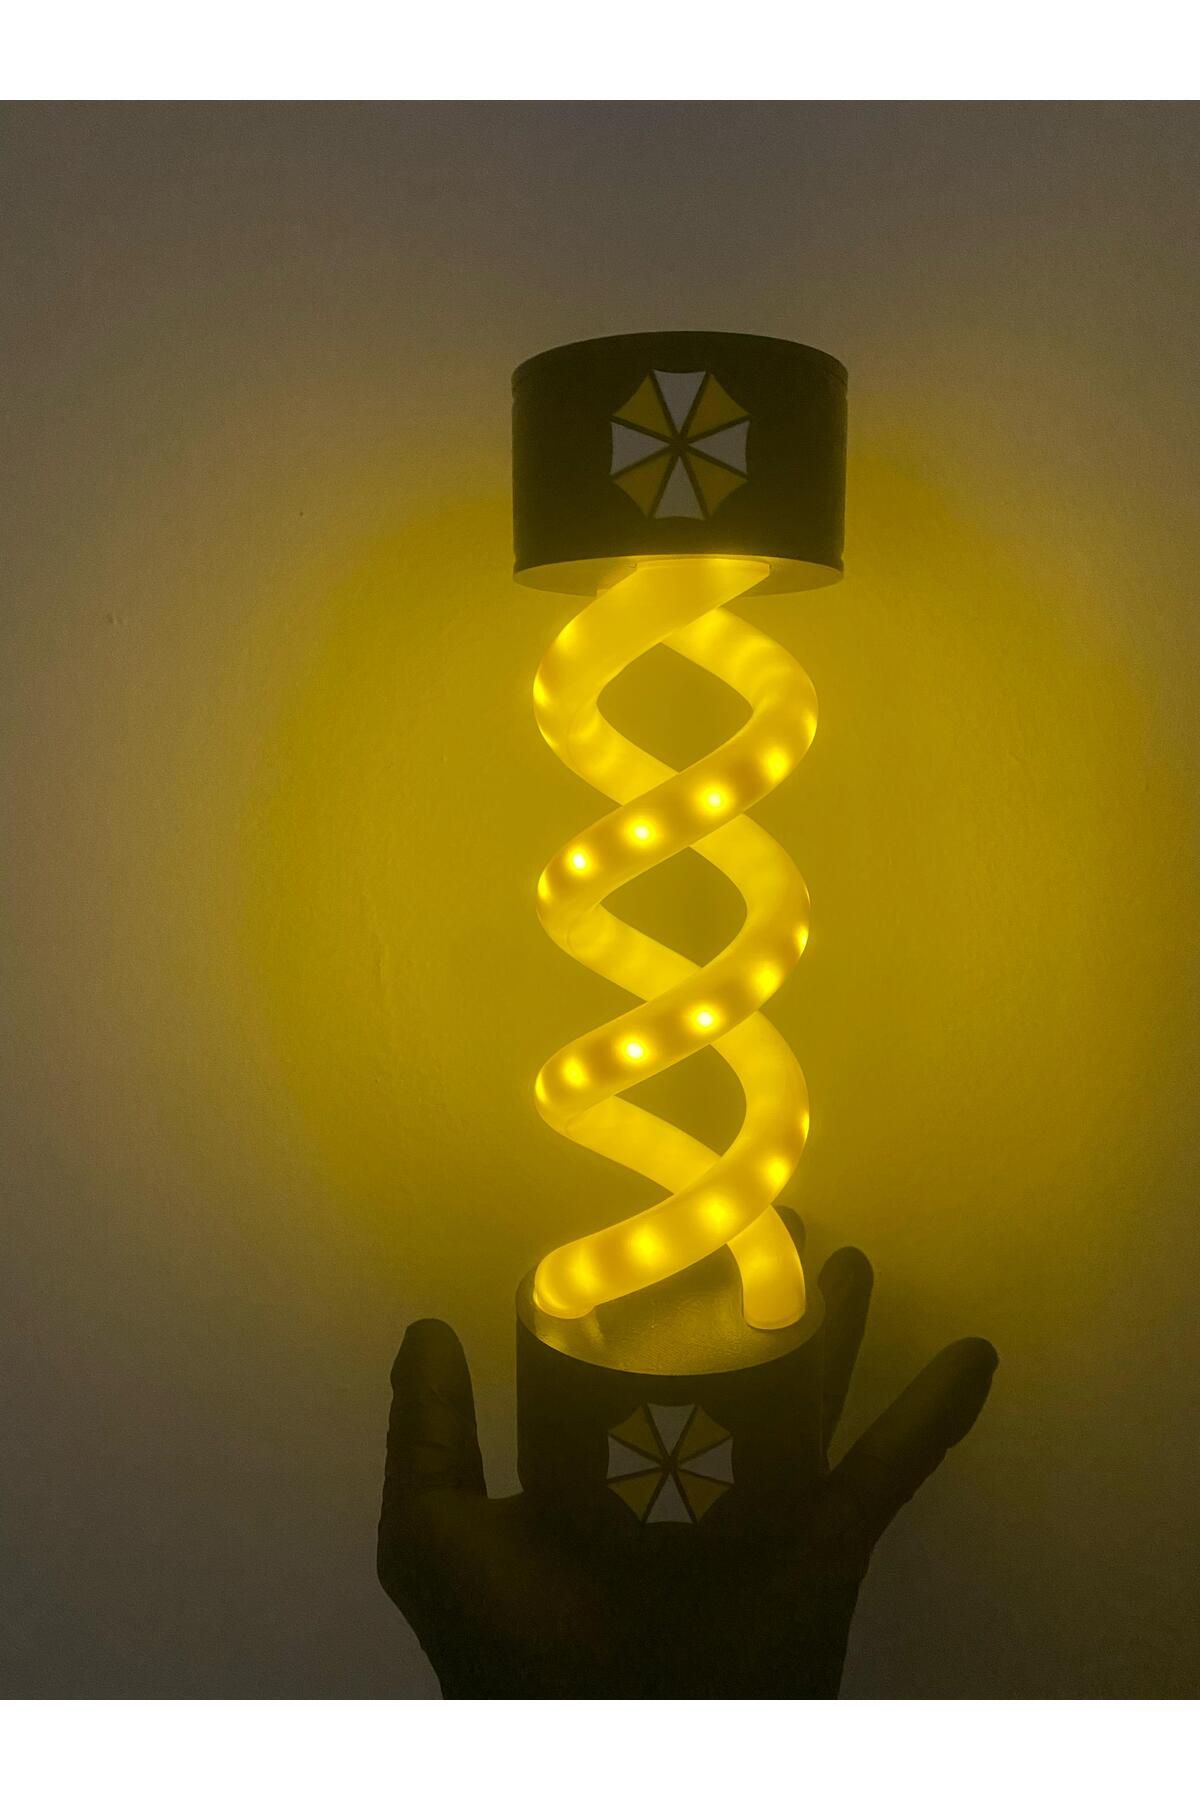 Westonya Resıdent Evıl T-vırus Işıklı Dekoratif Lamba Sarı Gece Lambası